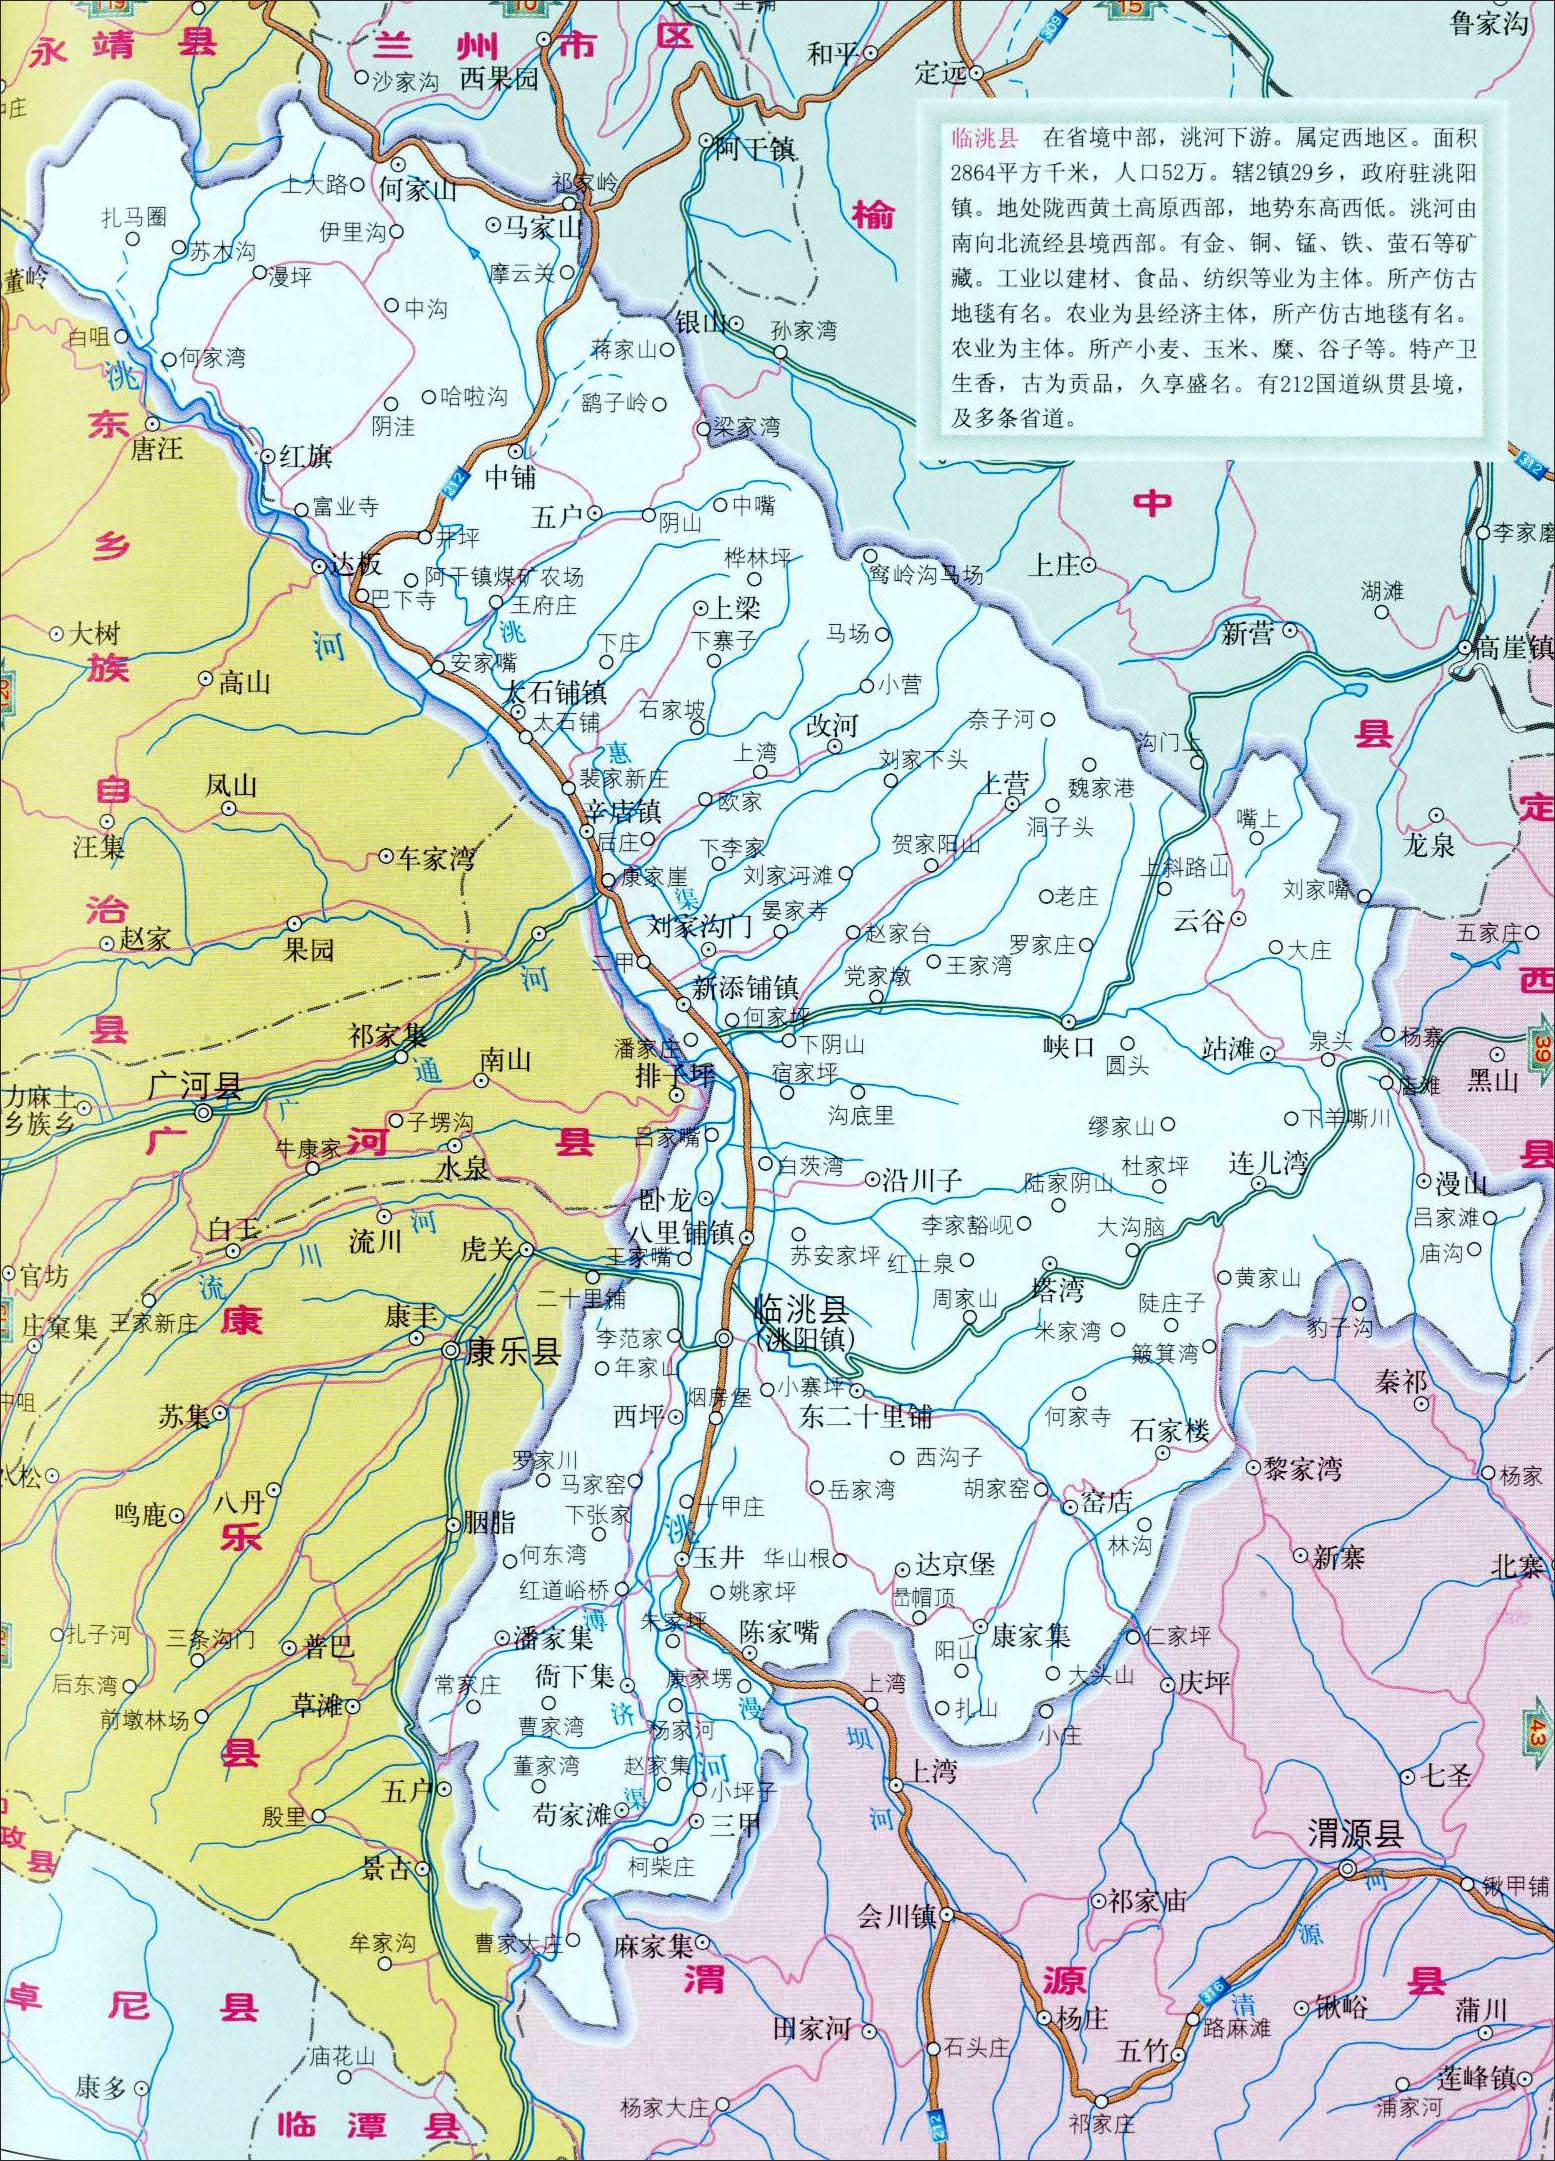 临洮县概况及优越条件下近年来发展中所存在的问题